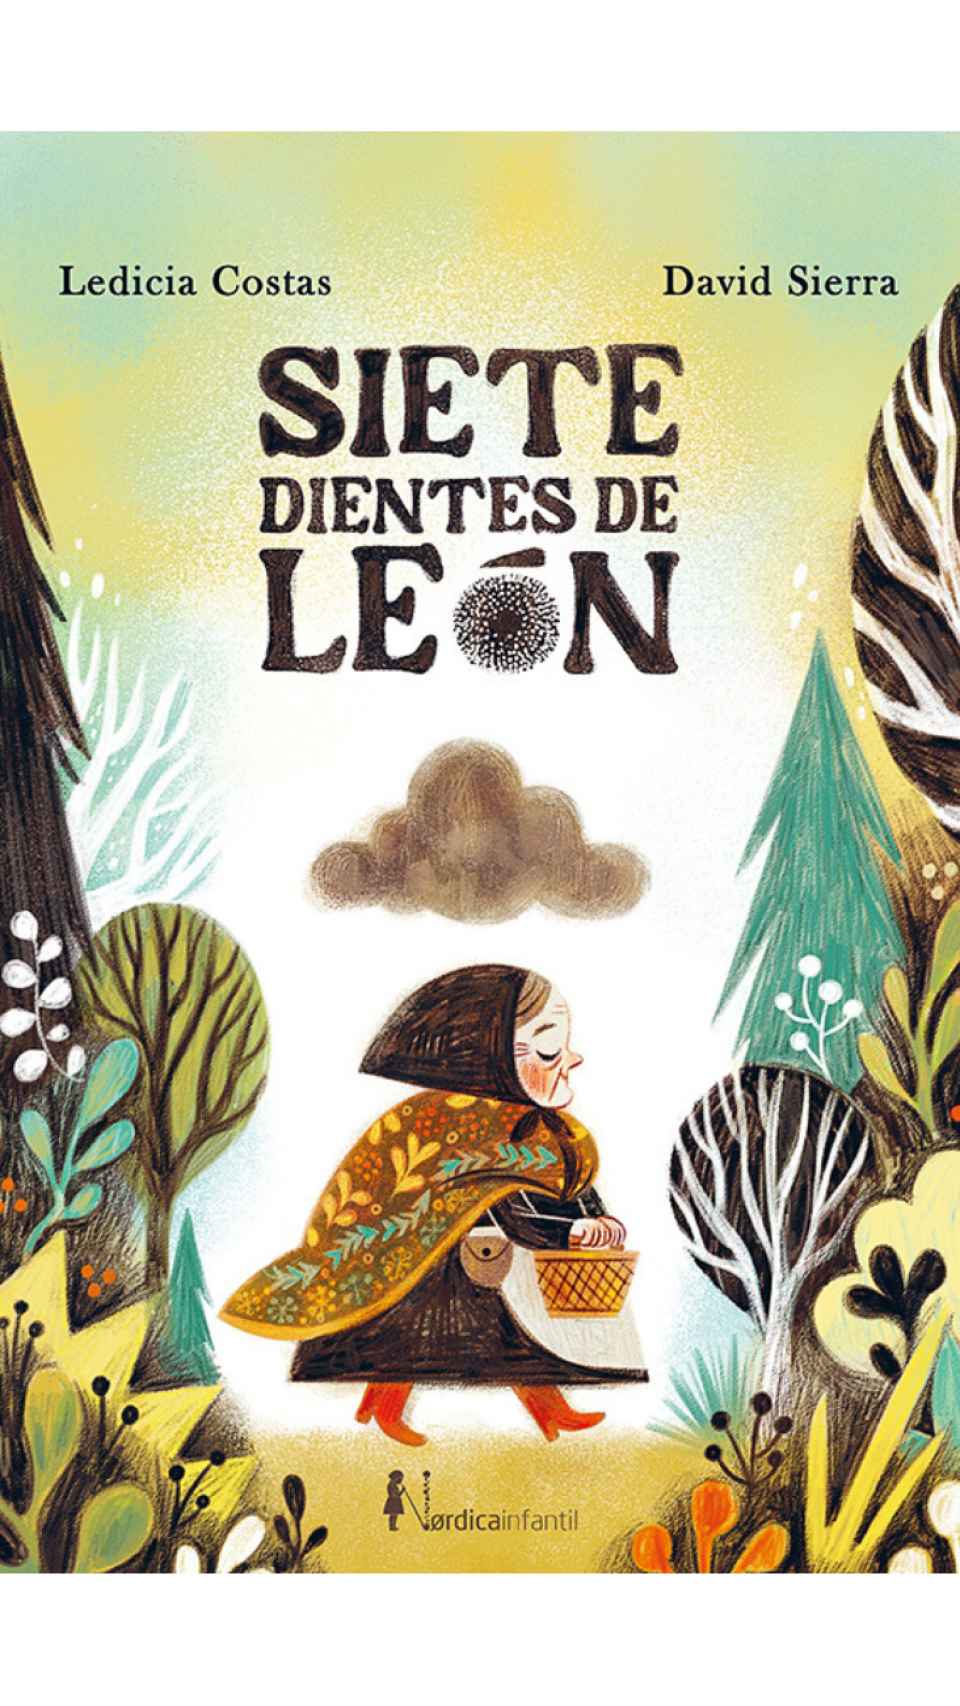 'Siete dientes de león', un libro de Ledicia Costas y David Sierra